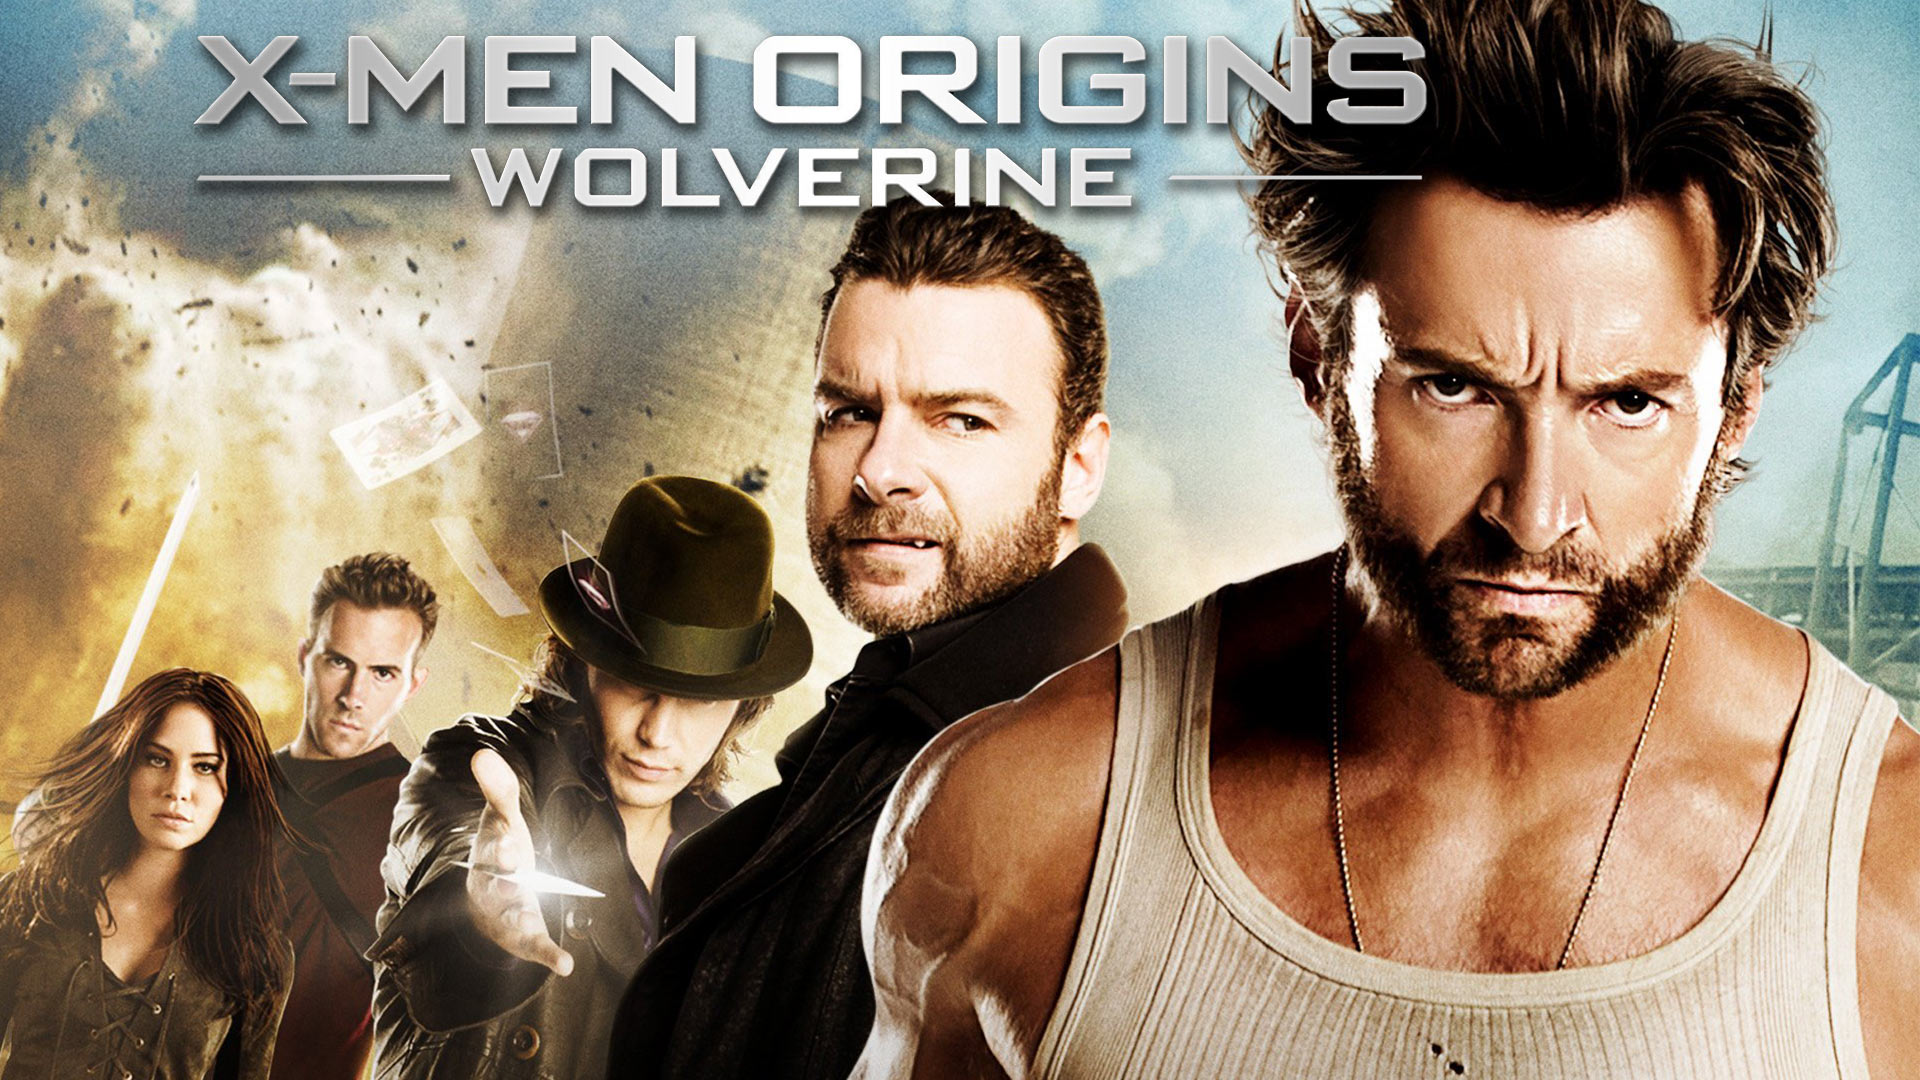 https://www.amazon.com/X-Men-Origins-Wolverine-Hugh-Jackman/dp/B002K99P7S